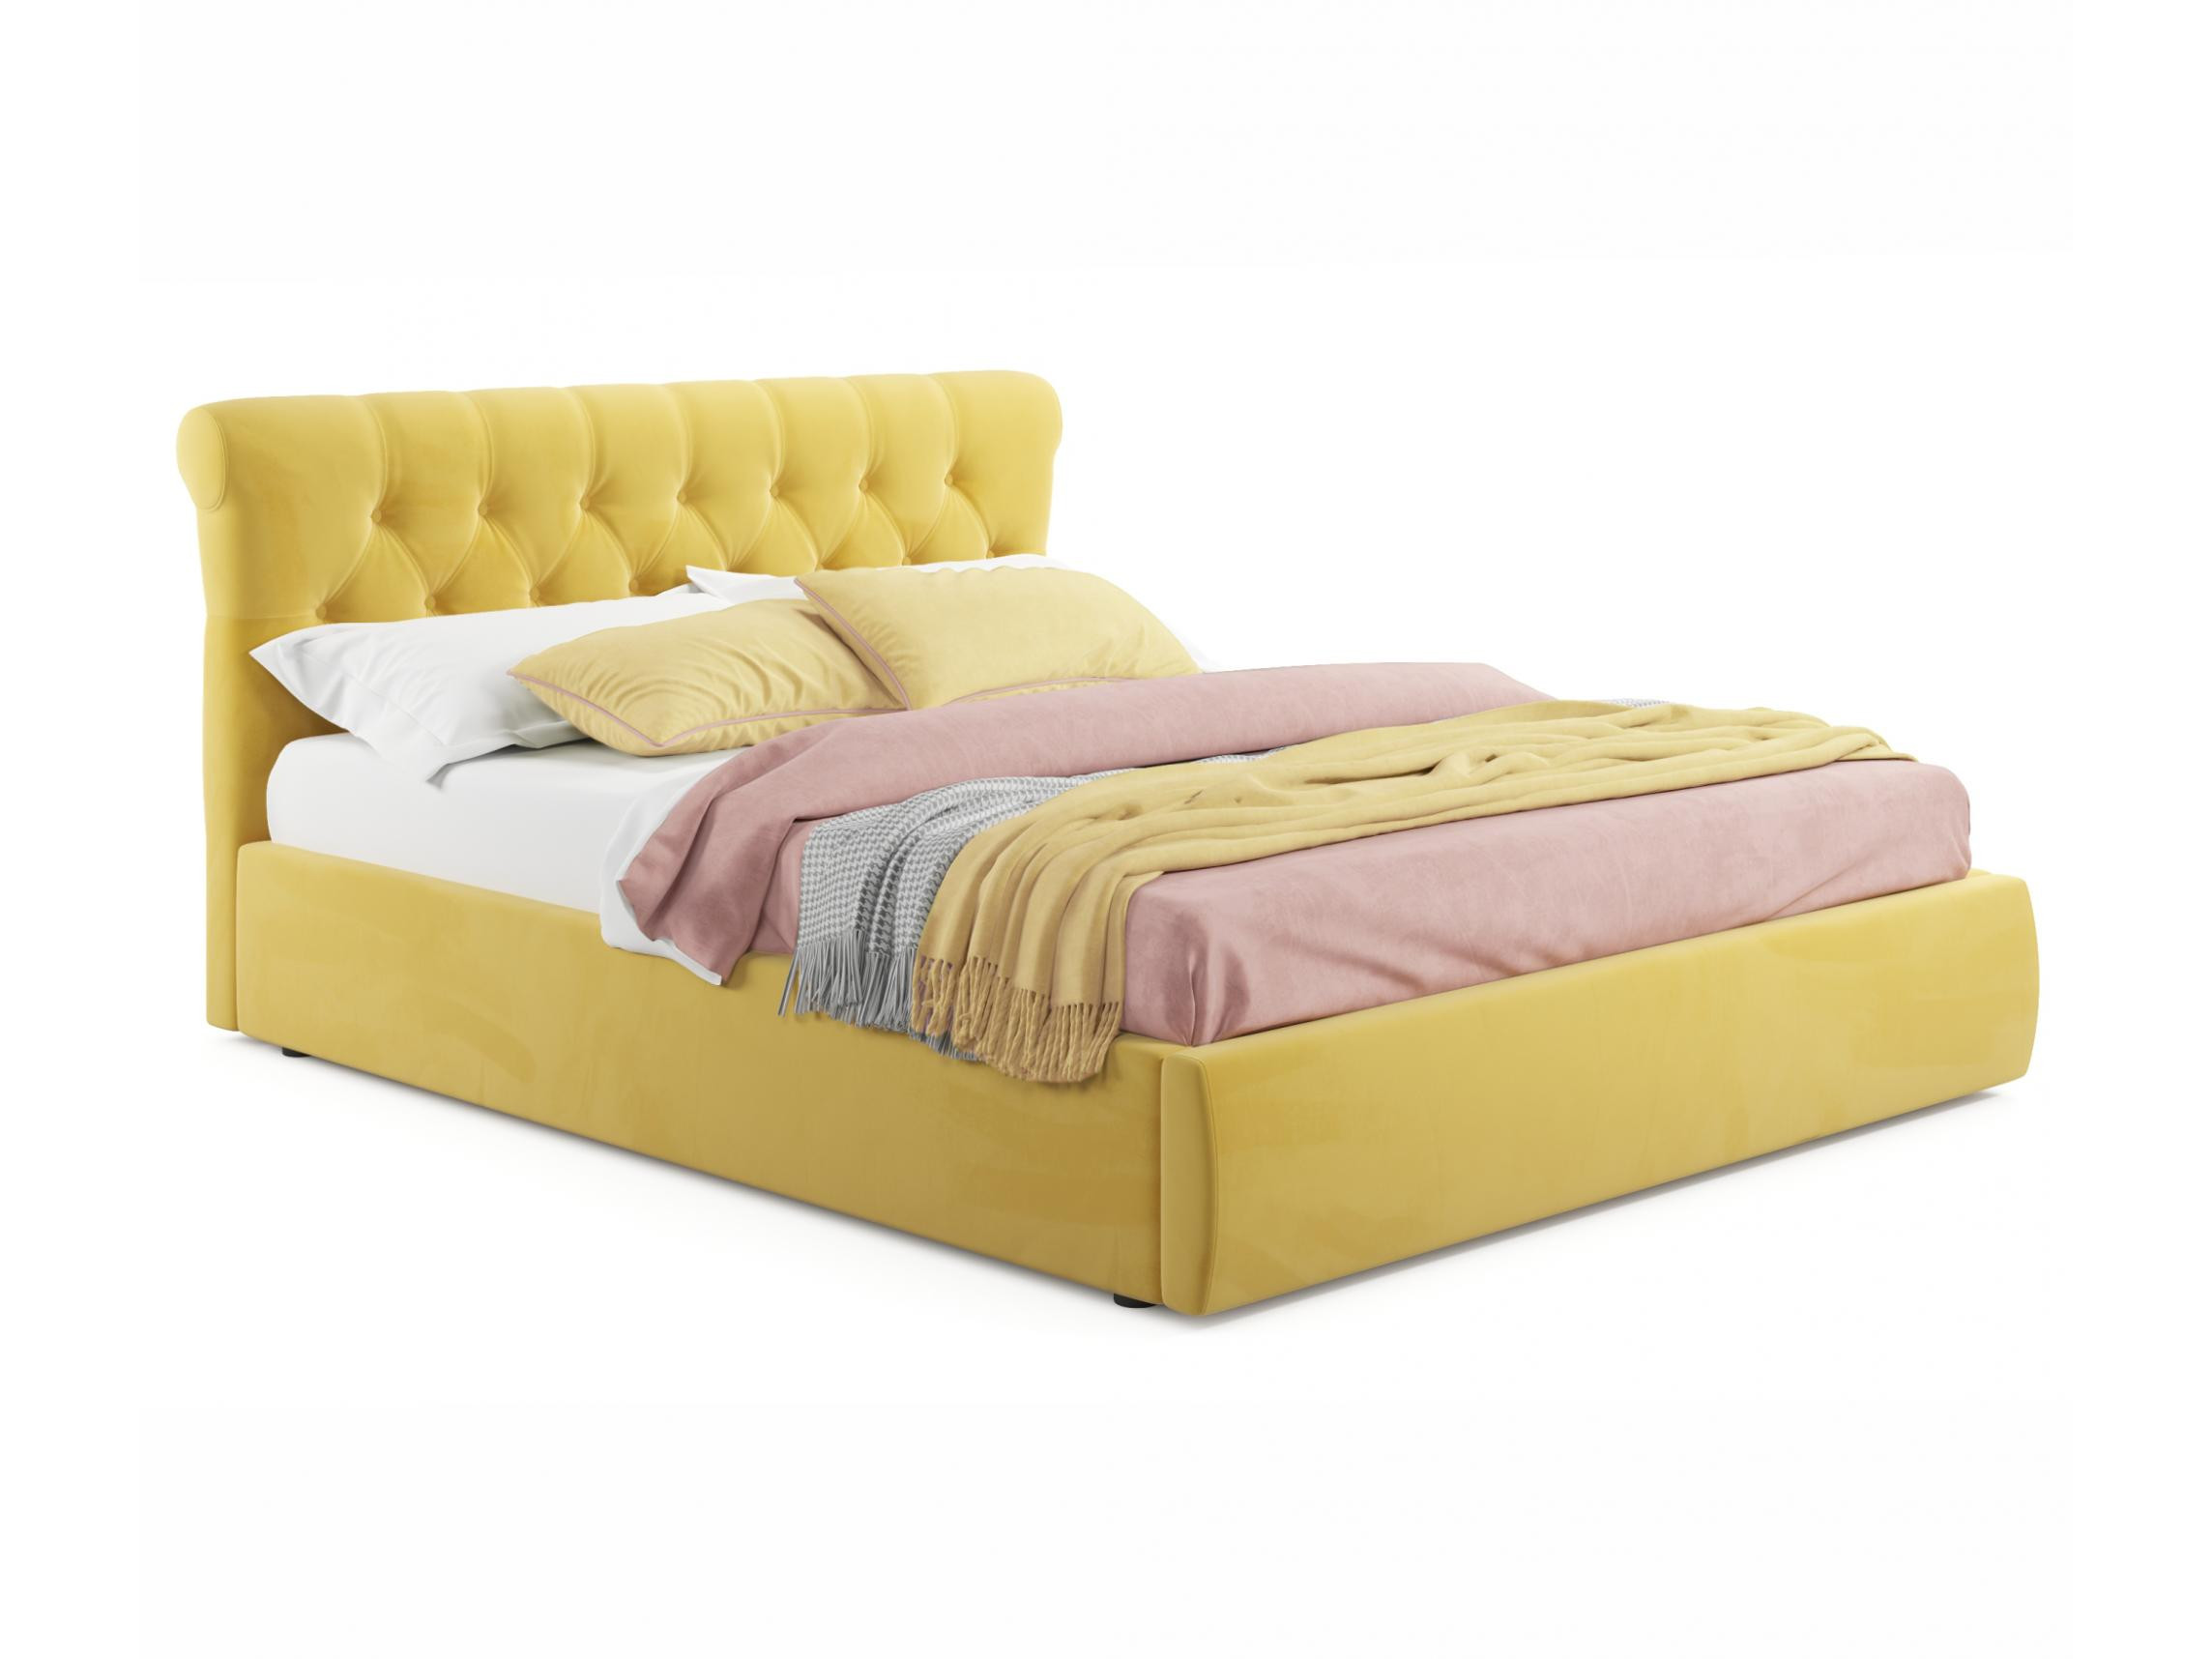 Мягкая кровать Ameli 1600 желтая с ортопедическим основанием желтый, Желтый, Велюр, ДСП мягкая кровать ameli 1600 желтая с ортопедическим основанием желтый желтый велюр дсп